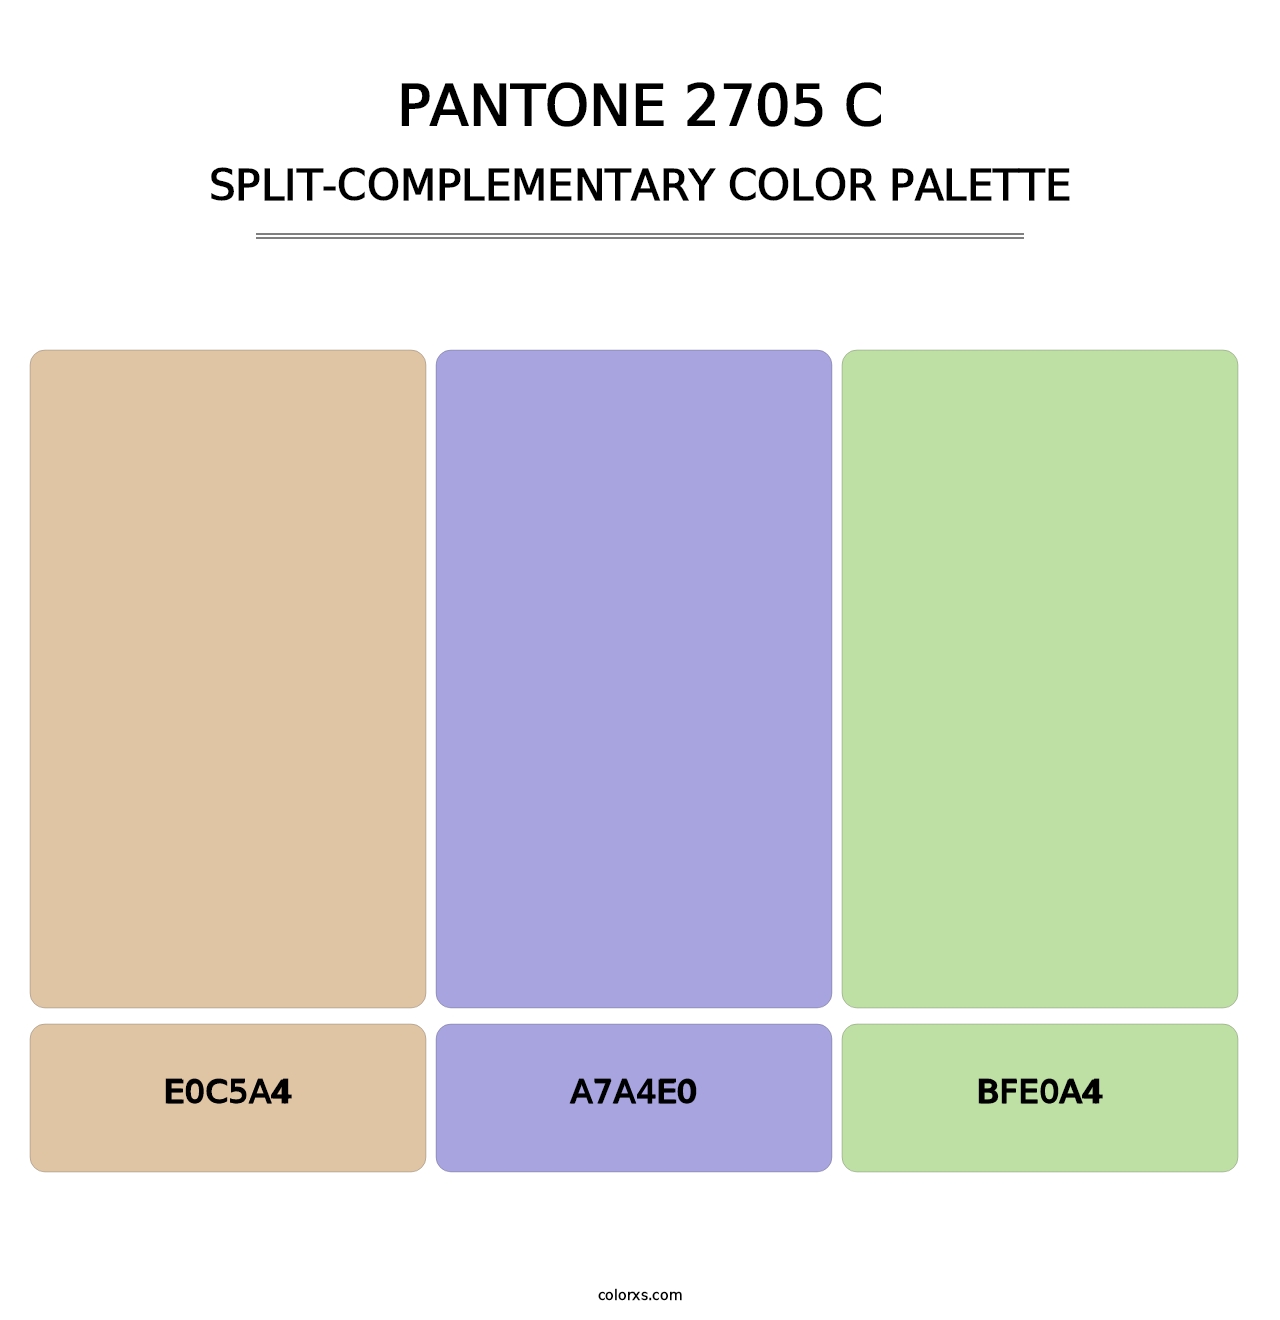 PANTONE 2705 C - Split-Complementary Color Palette